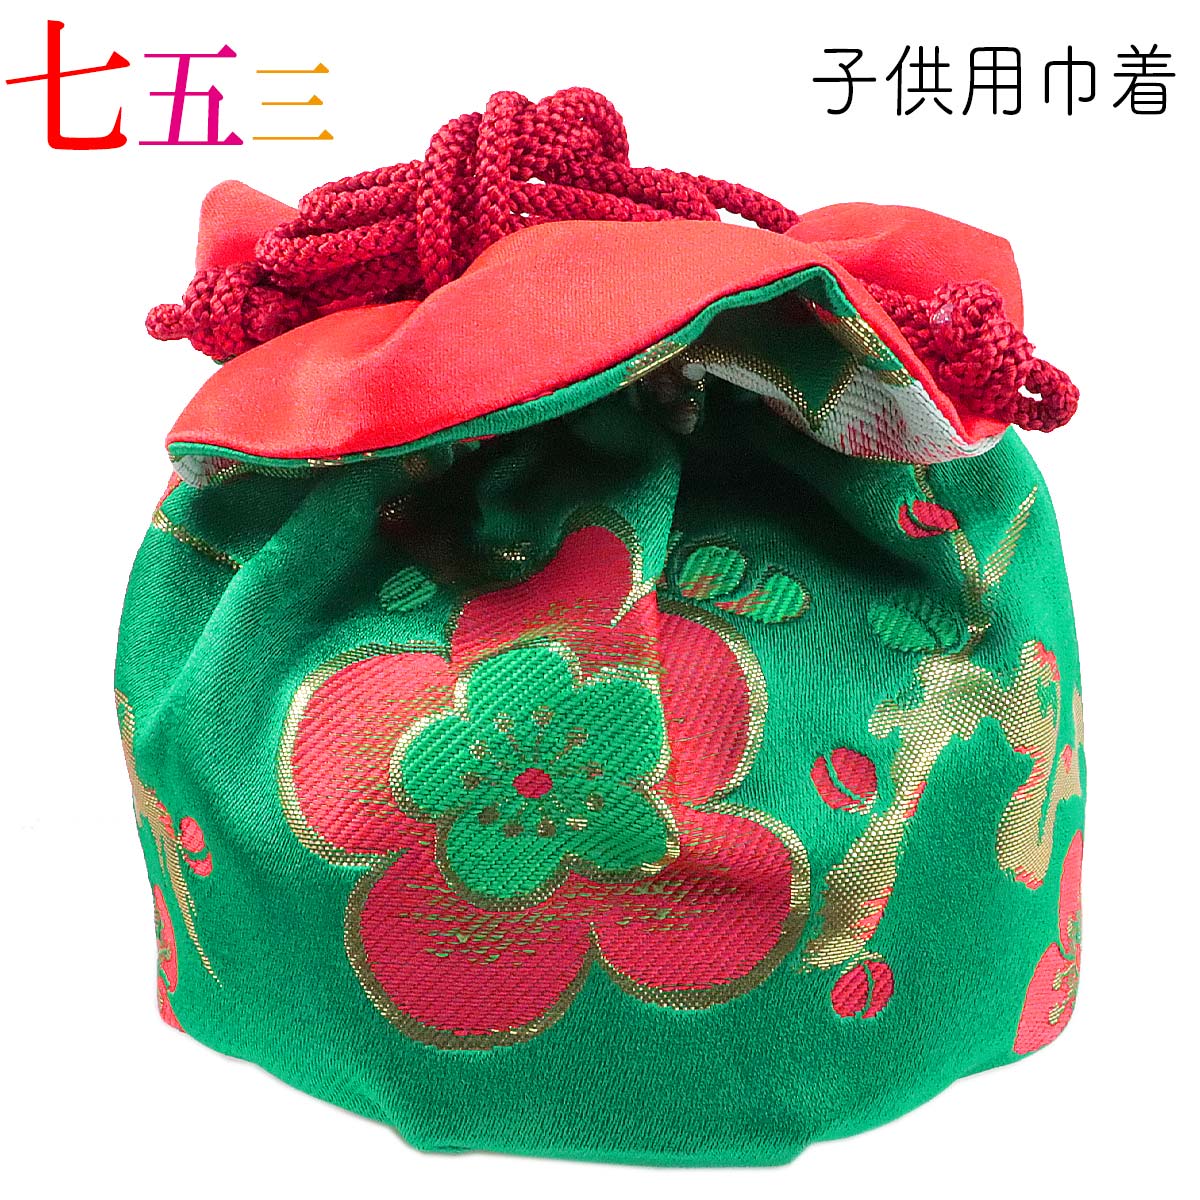 子供用巾着 単品 -8- 七五三用 女の子用 緑/赤 日本製